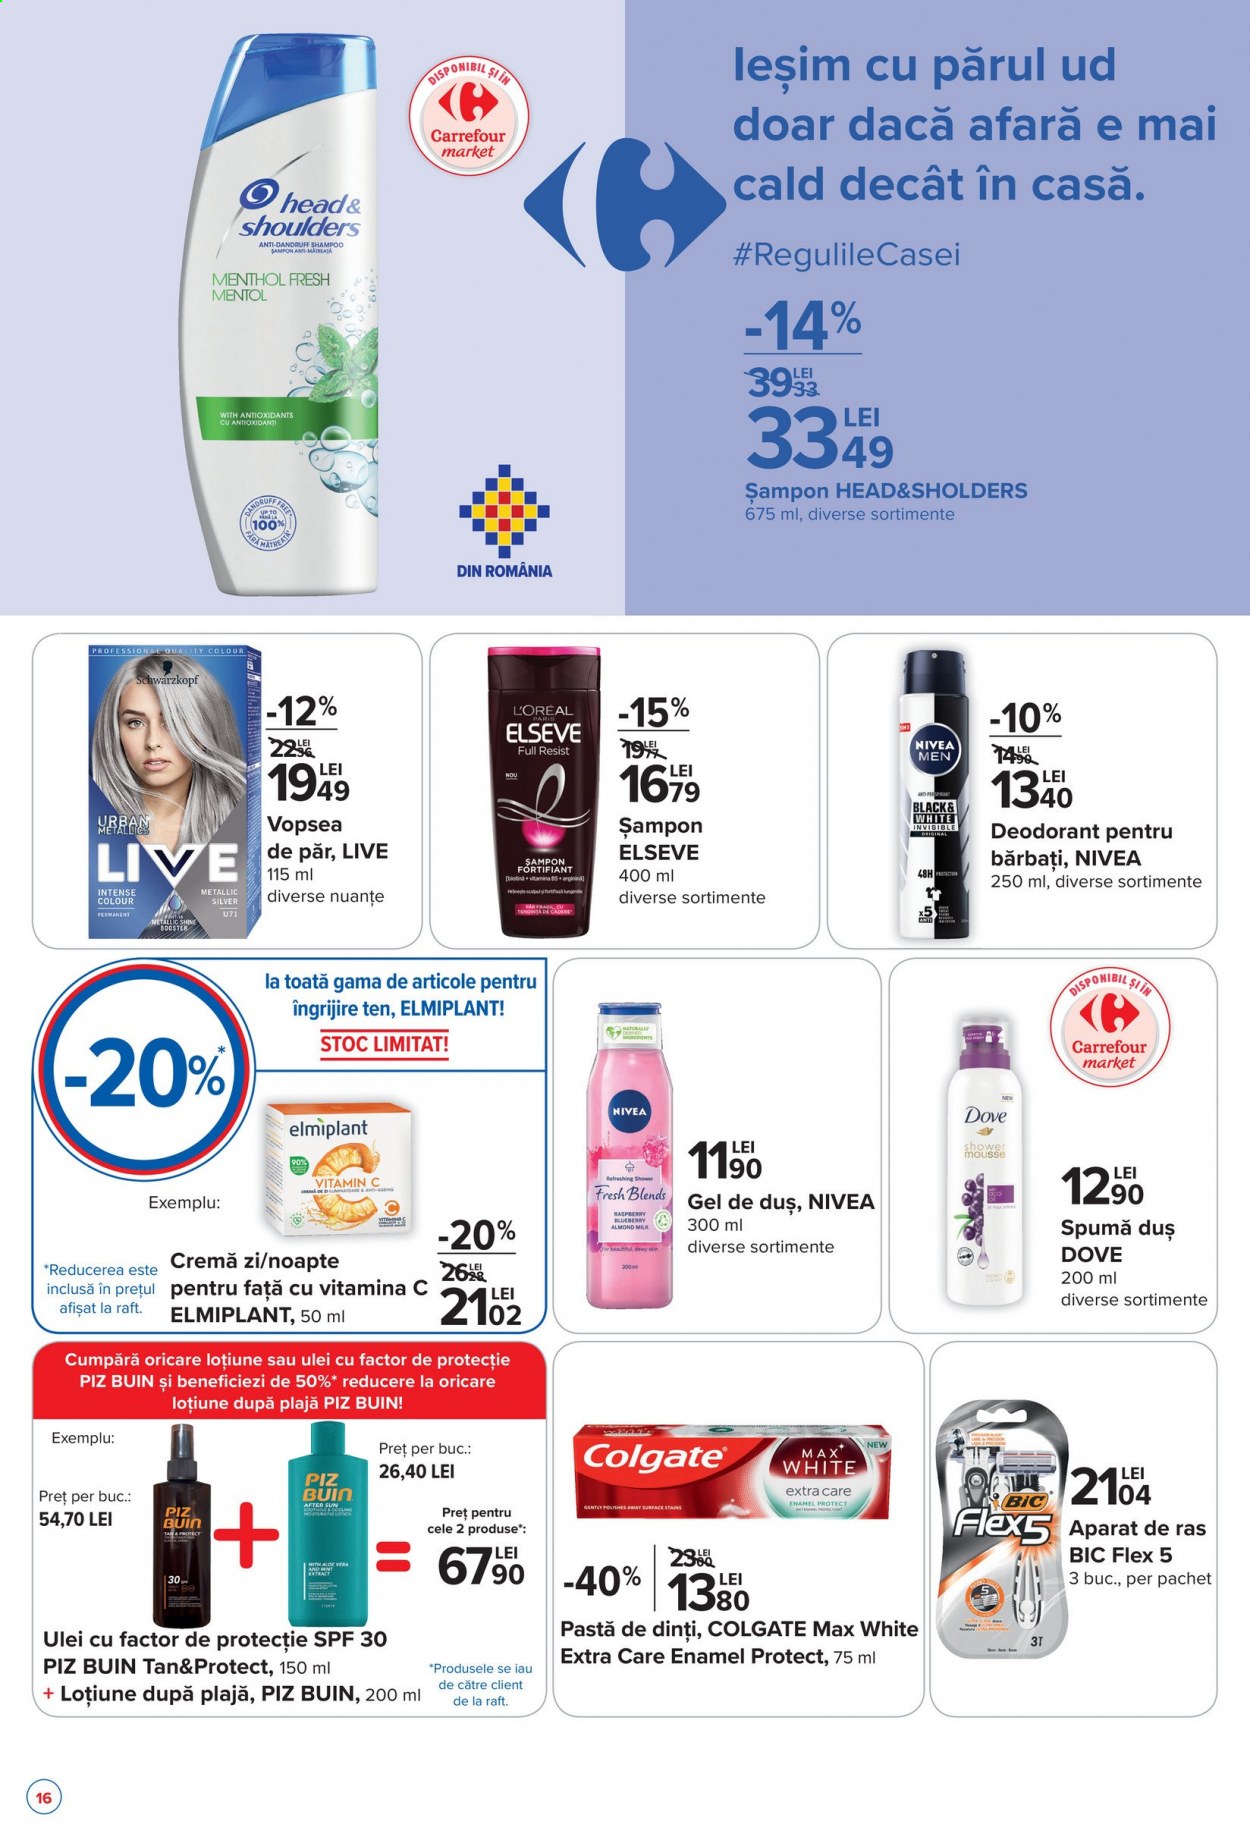 thumbnail - Cataloage Carrefour - 13.05.2021 - 19.05.2021 - Produse în vânzare - ulei, Nivea, Dove, șampon, şampon anti-mătreaţă, Colgate, pastă de dinți, cremă, L’Oréal, Elseve, deodorant, aparat de ras, Head. Pagina 16.